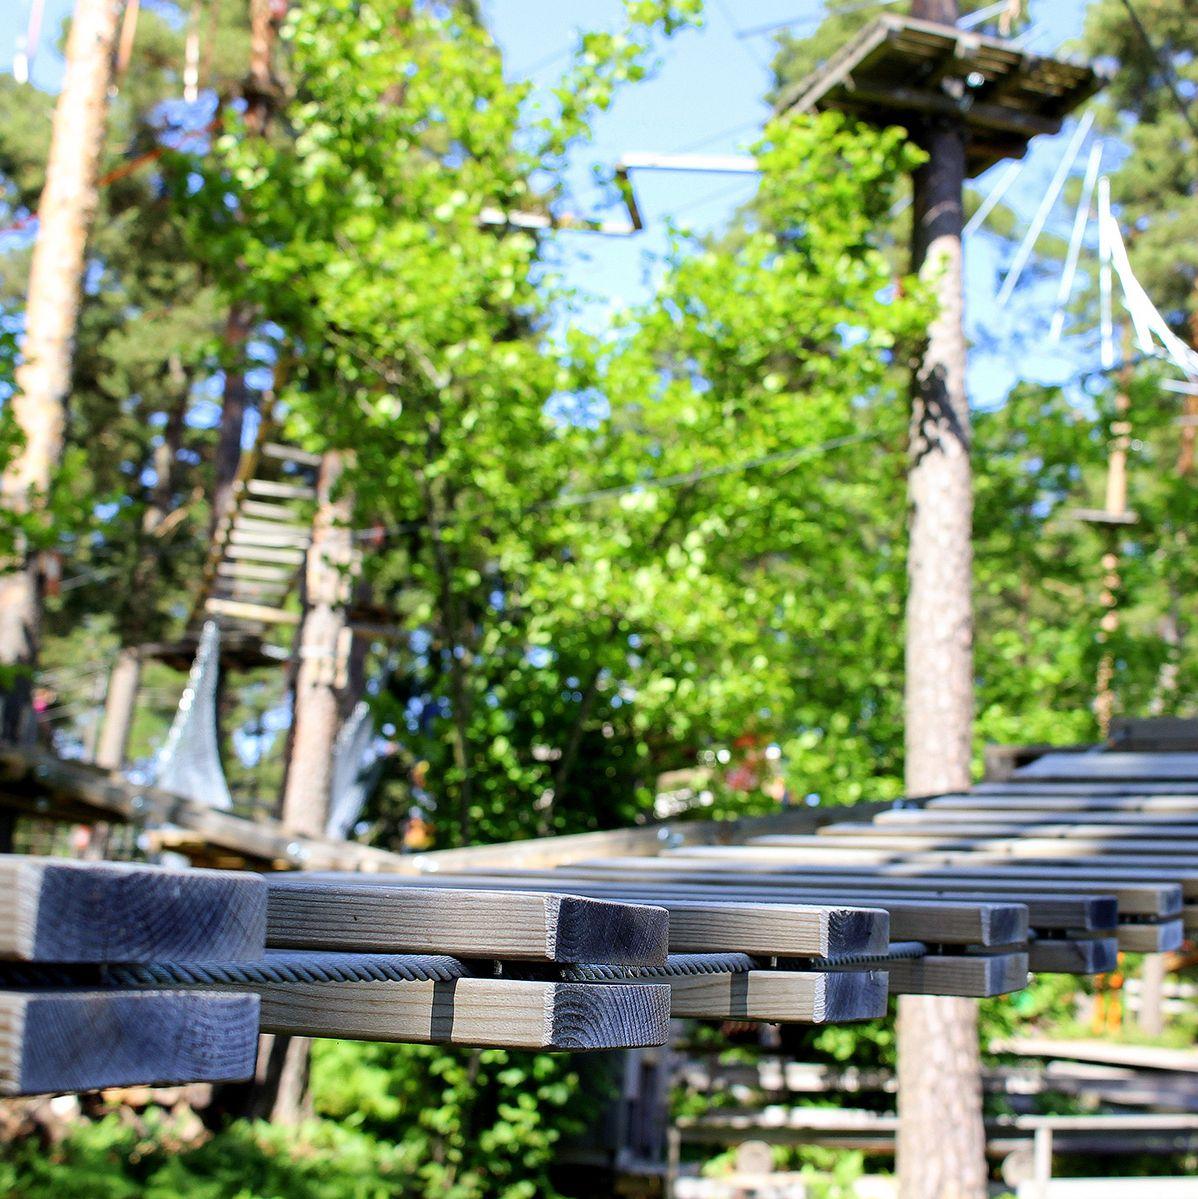 En träbro är upphängd mellan två träd, en del av Flowparks bana.